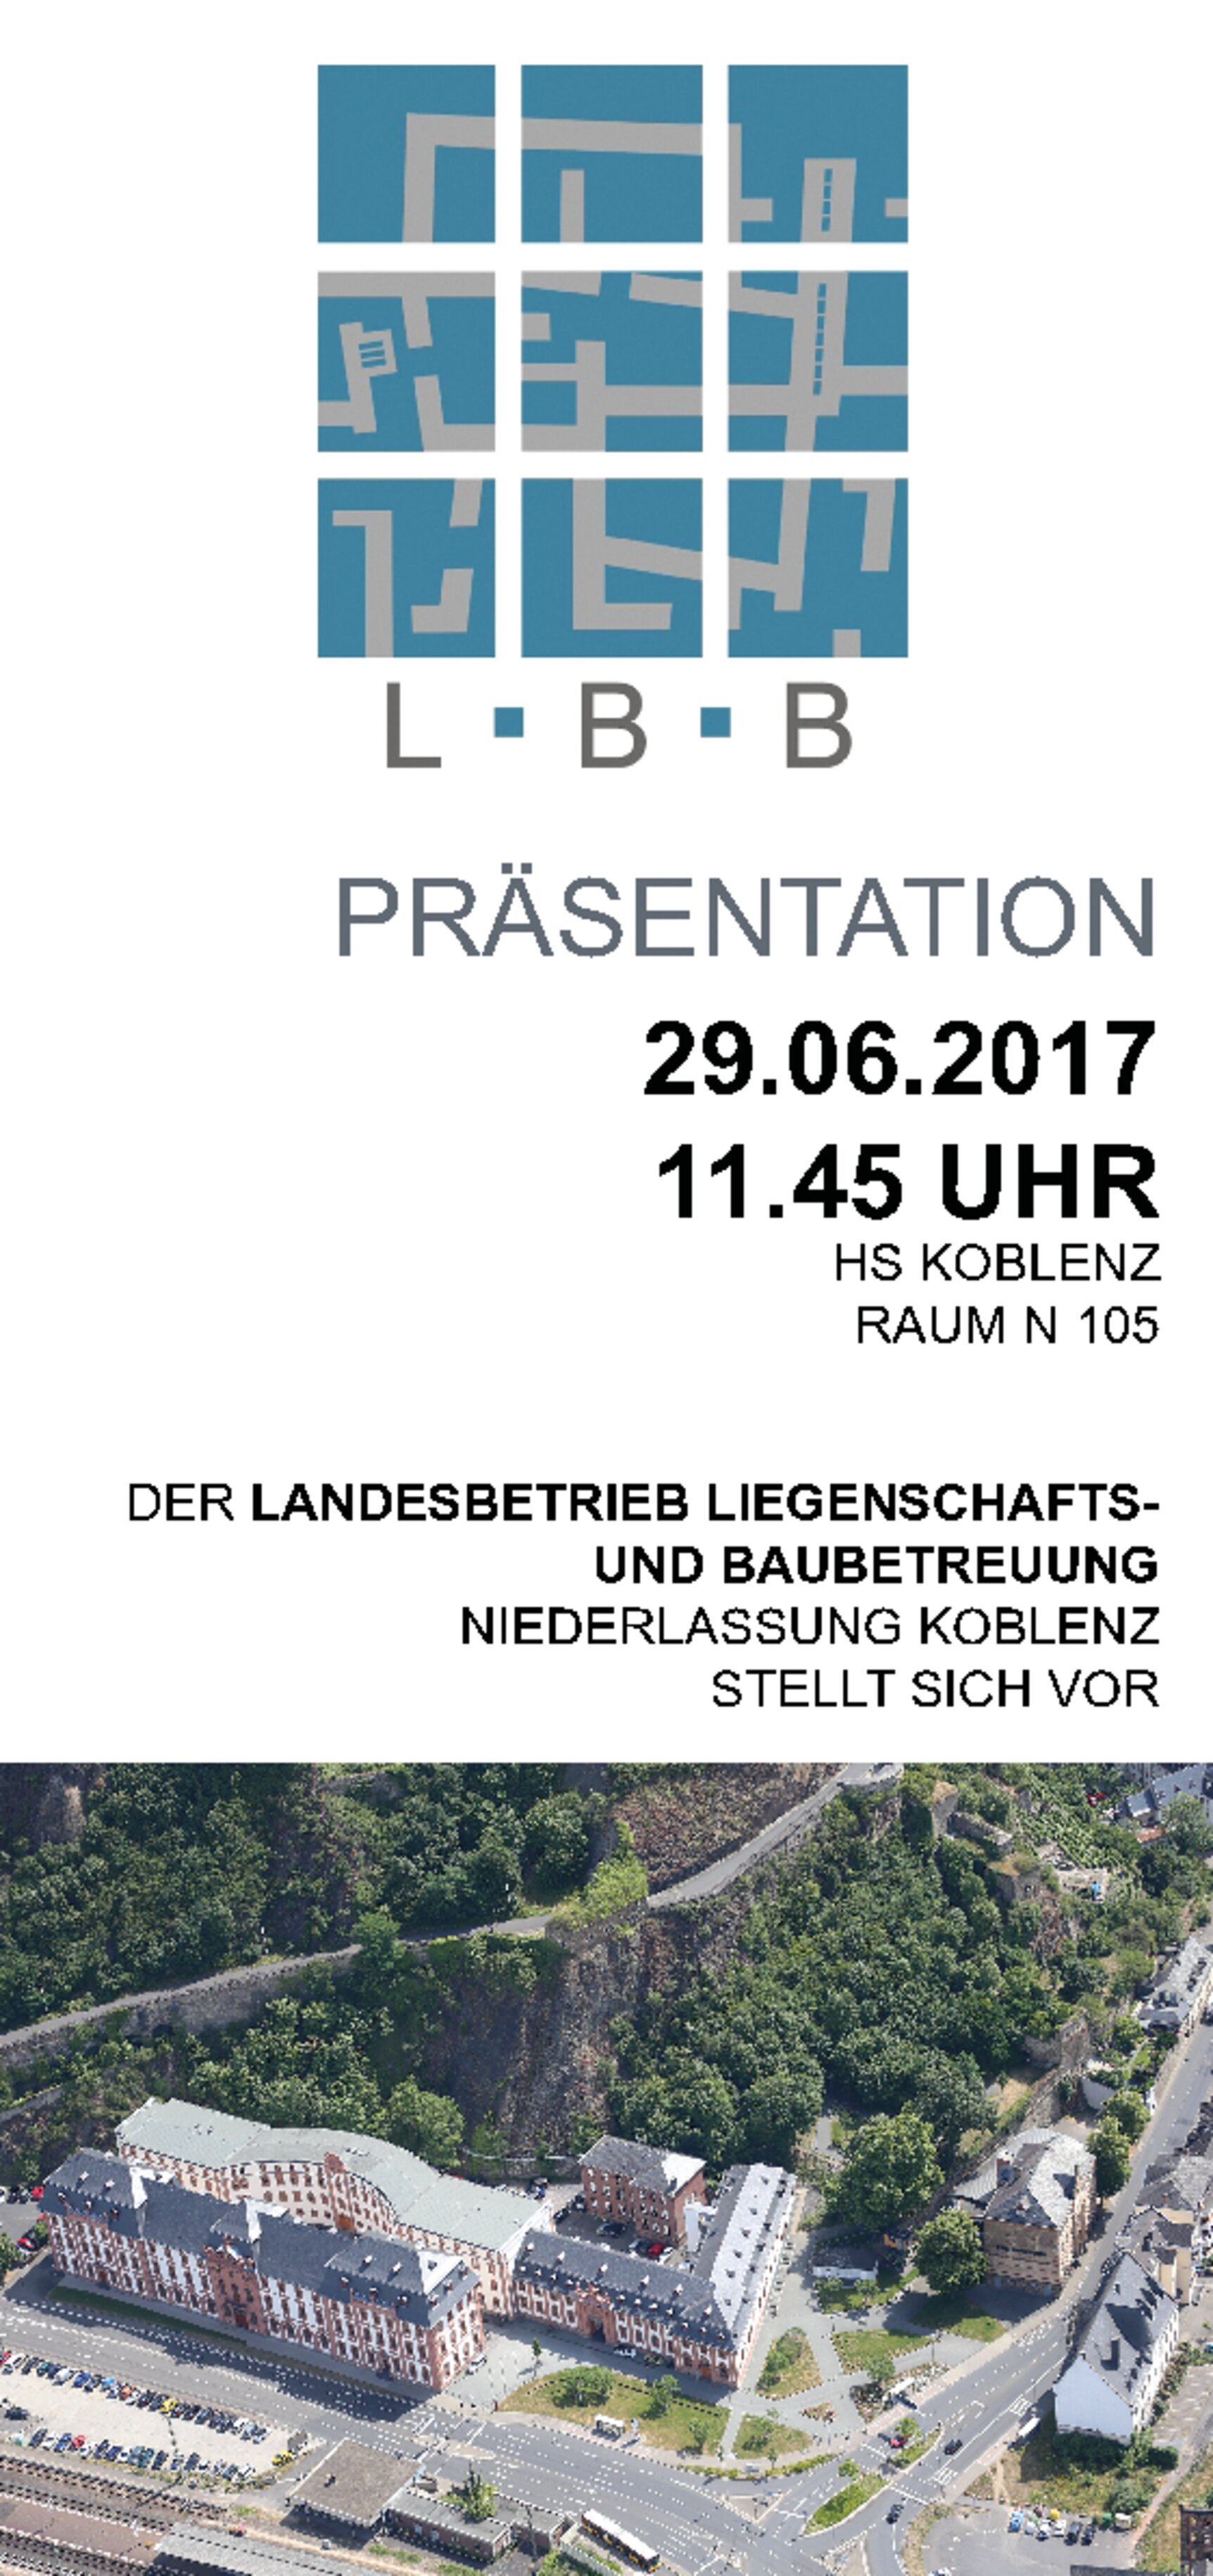 Plakat LBB Präsentation